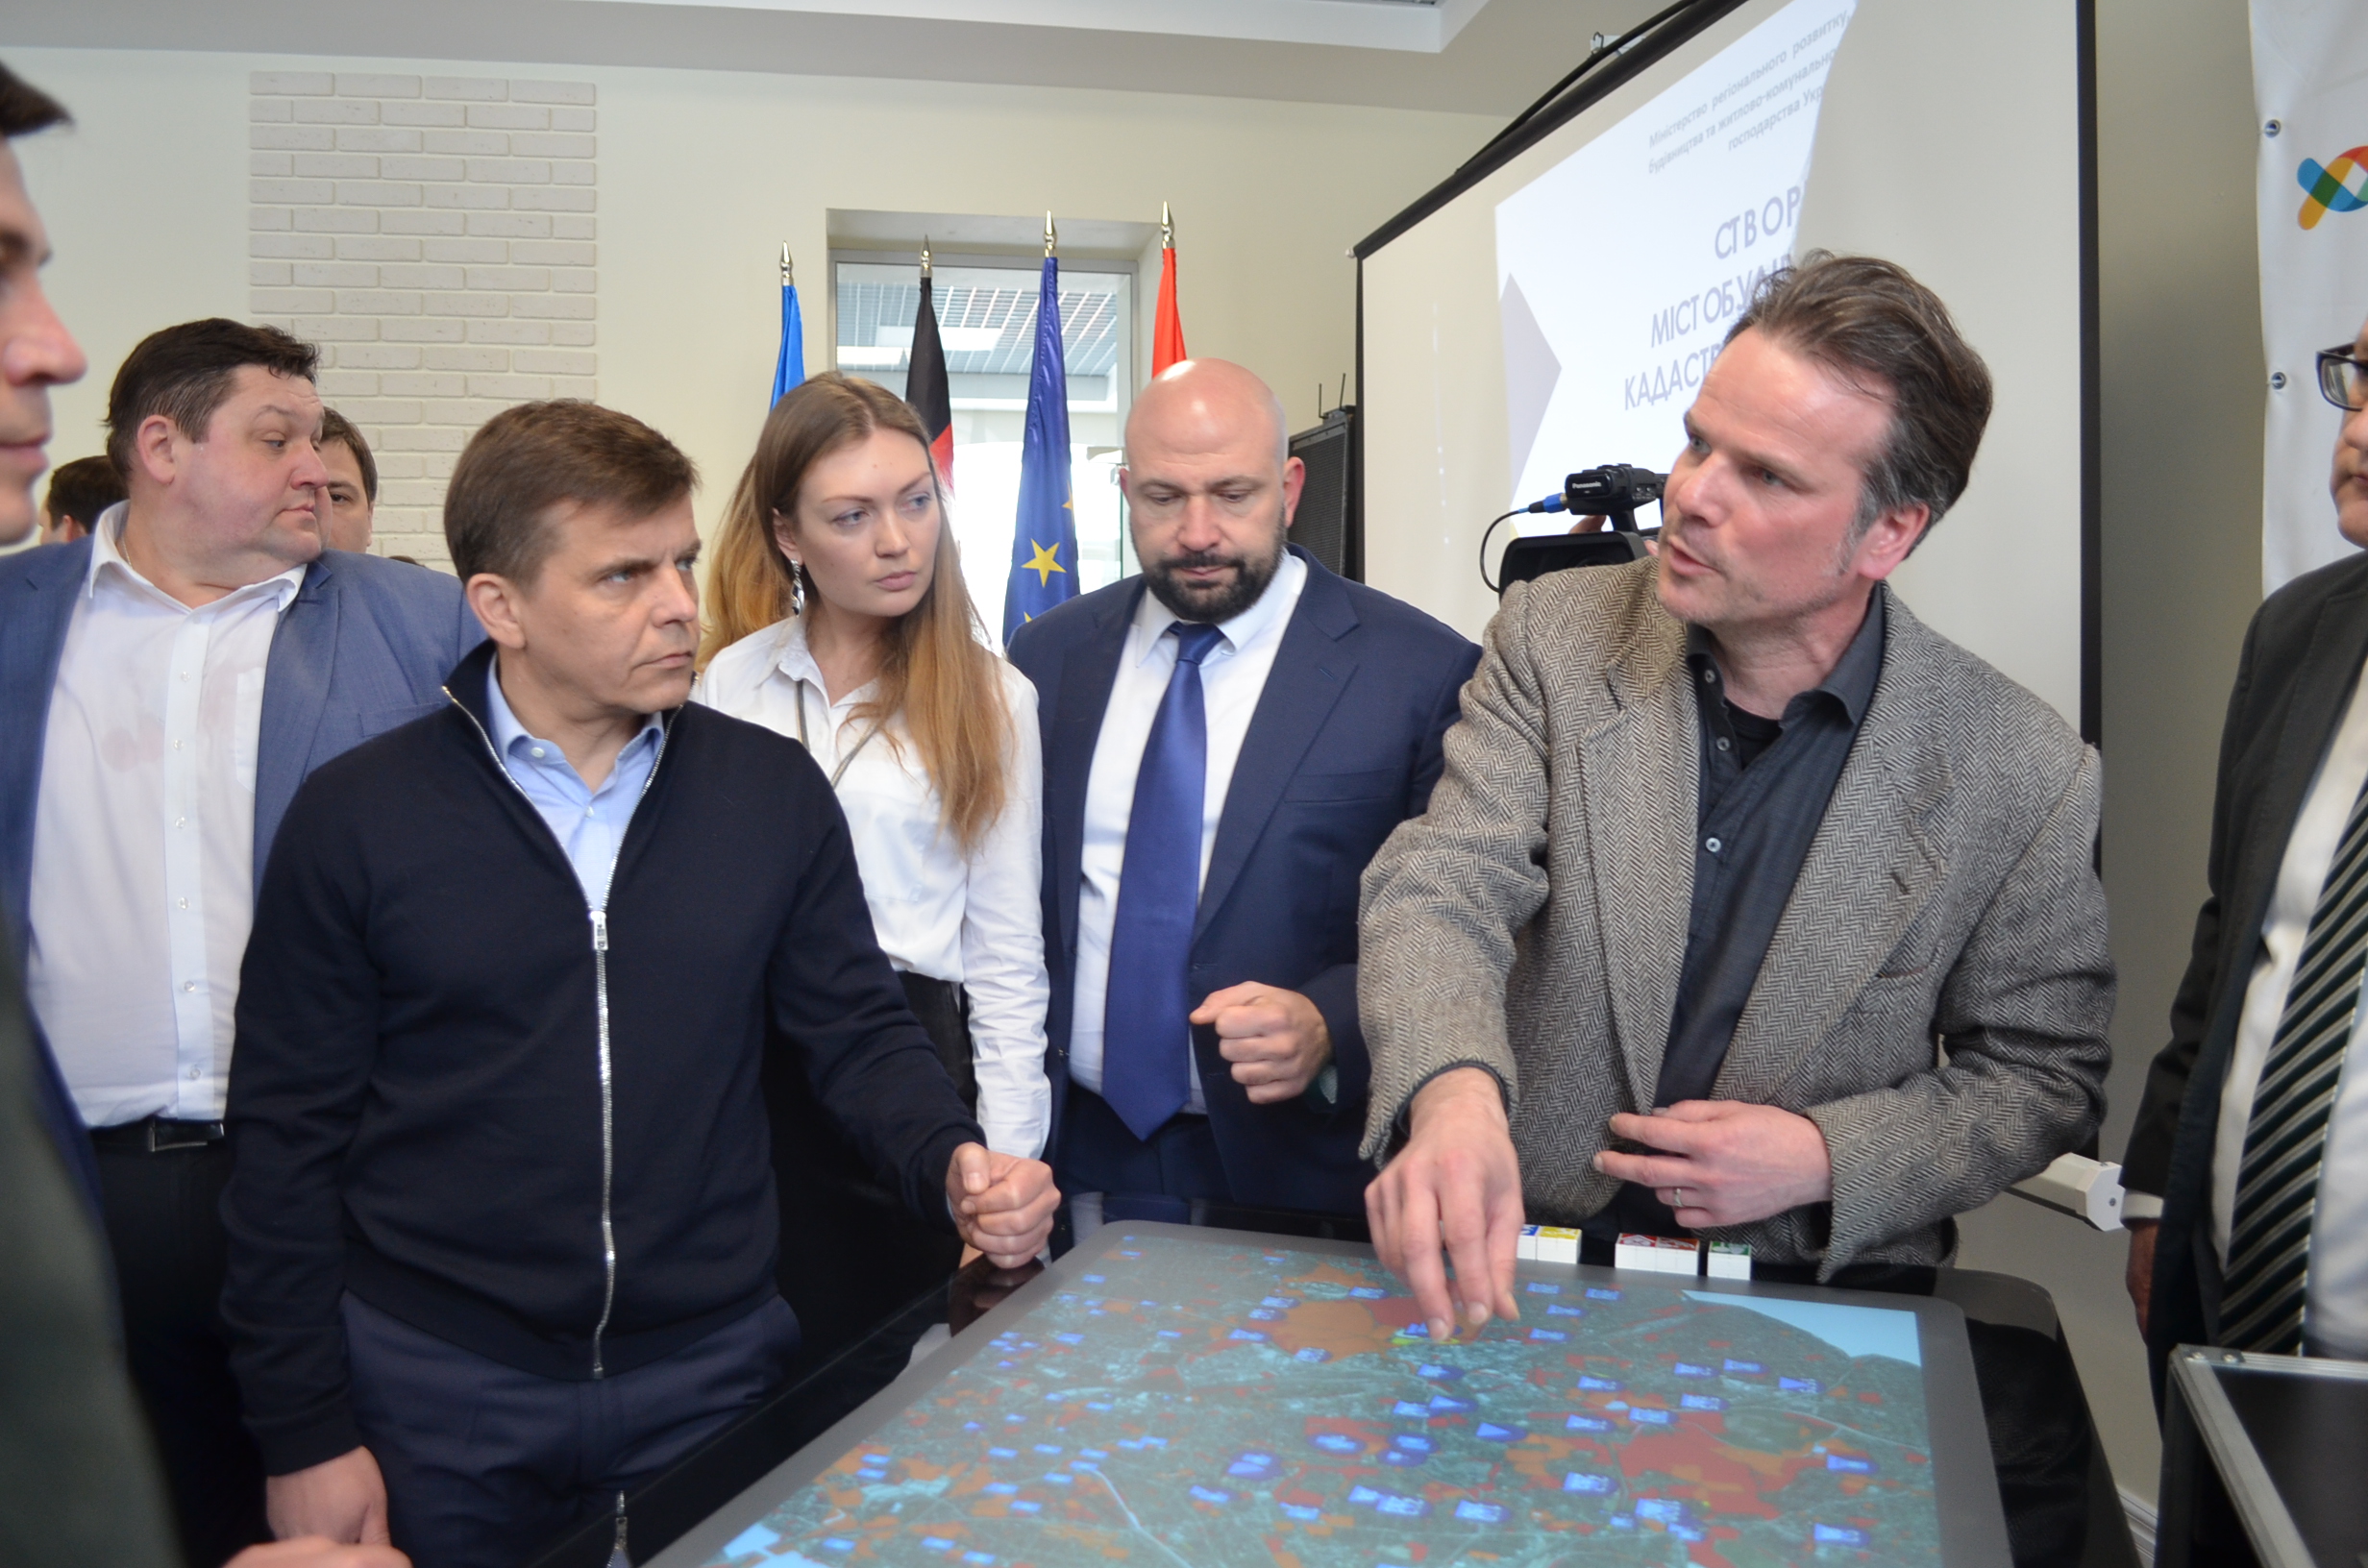 Житомир вперше в Україні у доступному  та повному обсязі оприлюднив дані генерального плану міста